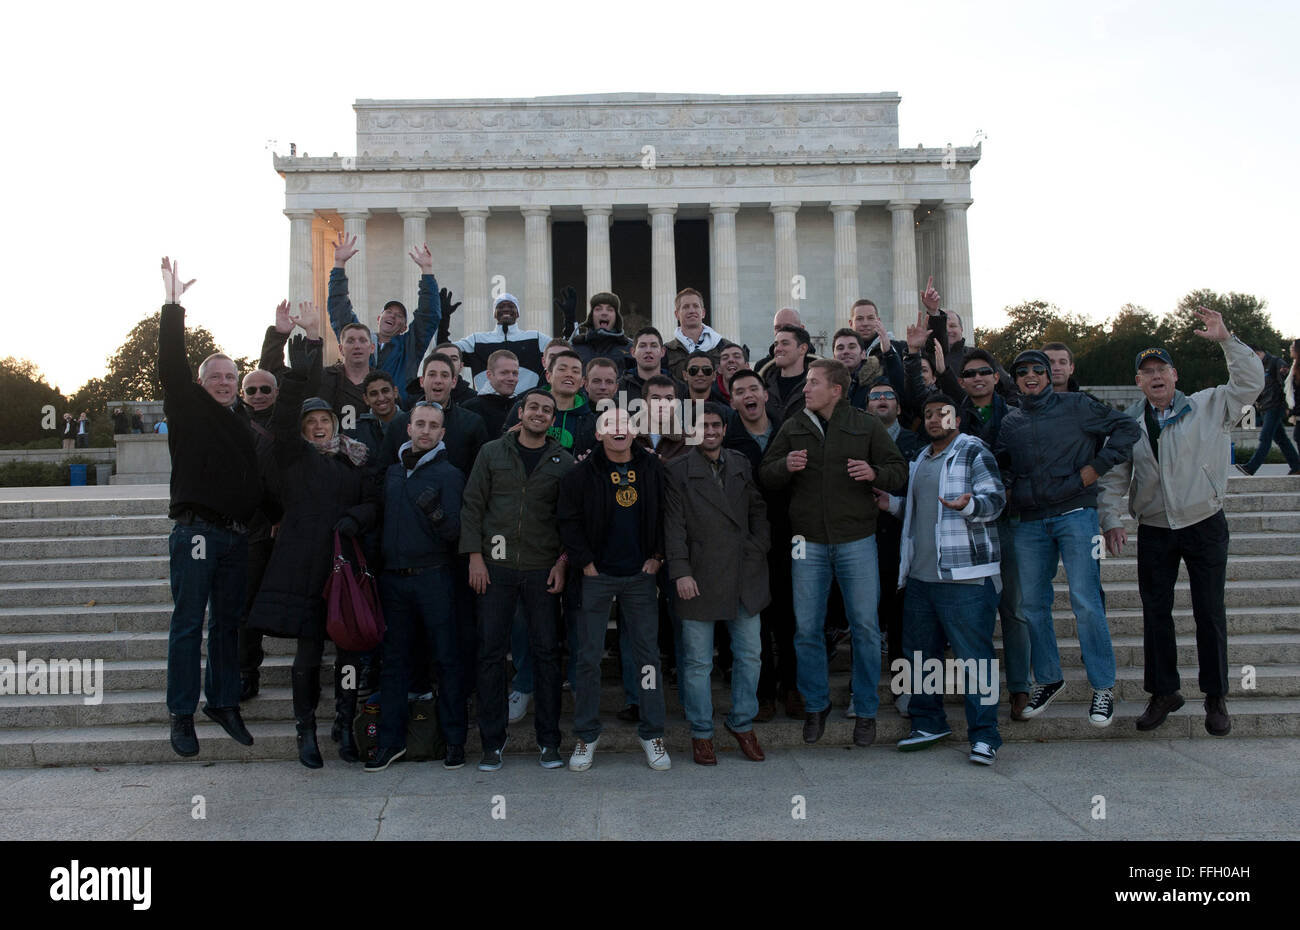 US-Flieger, multinationale Studenten und zivilen Escorts Pose für ein Gruppenfoto vor dem Lincoln Memorial während ihrer Tour von Washington, D.C. Stockfoto